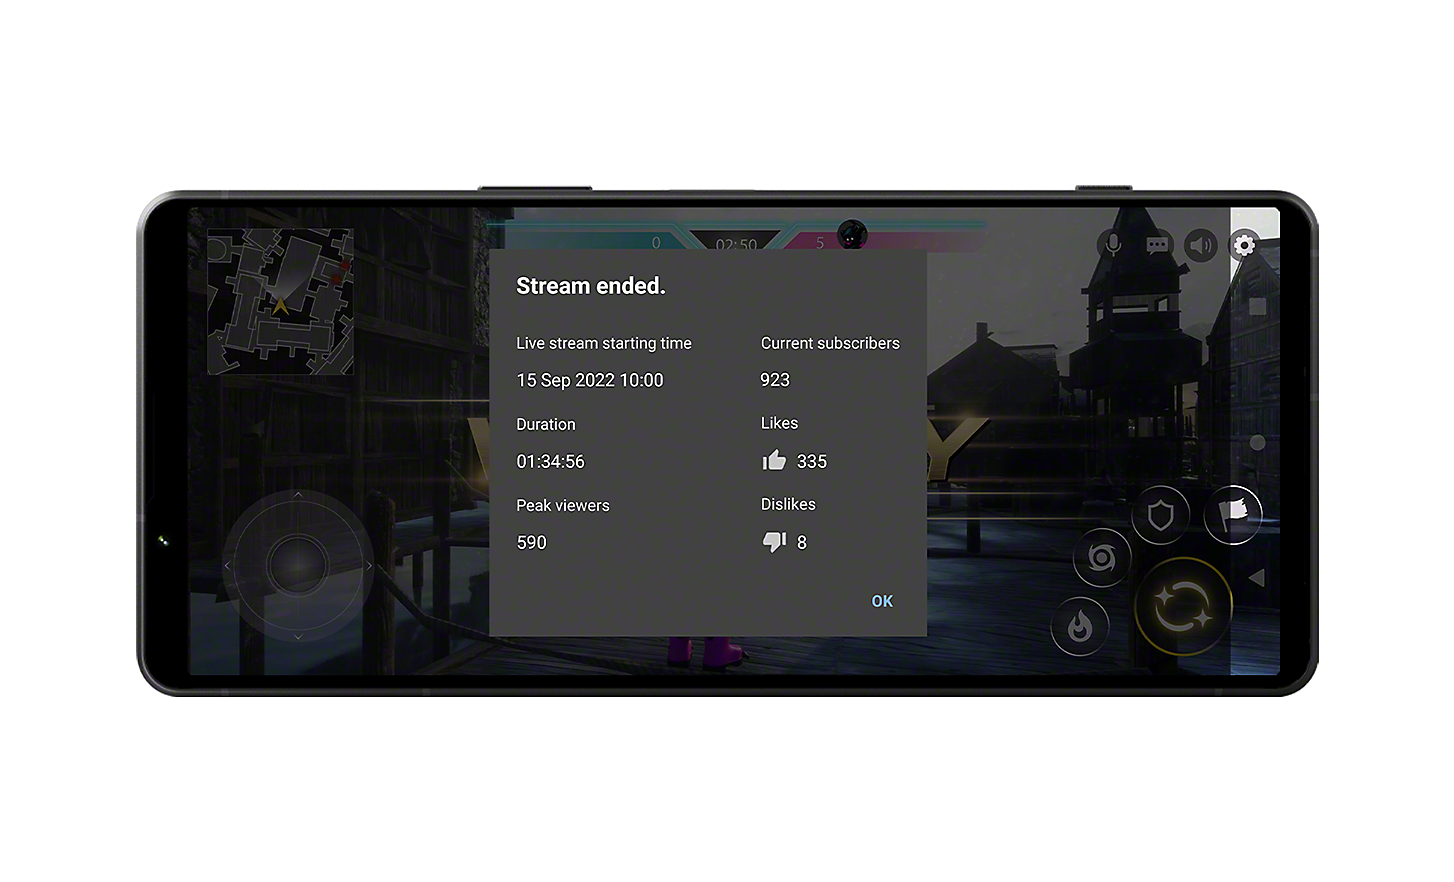 Xperia 1 V 遊戲截圖顯示串流統計資料